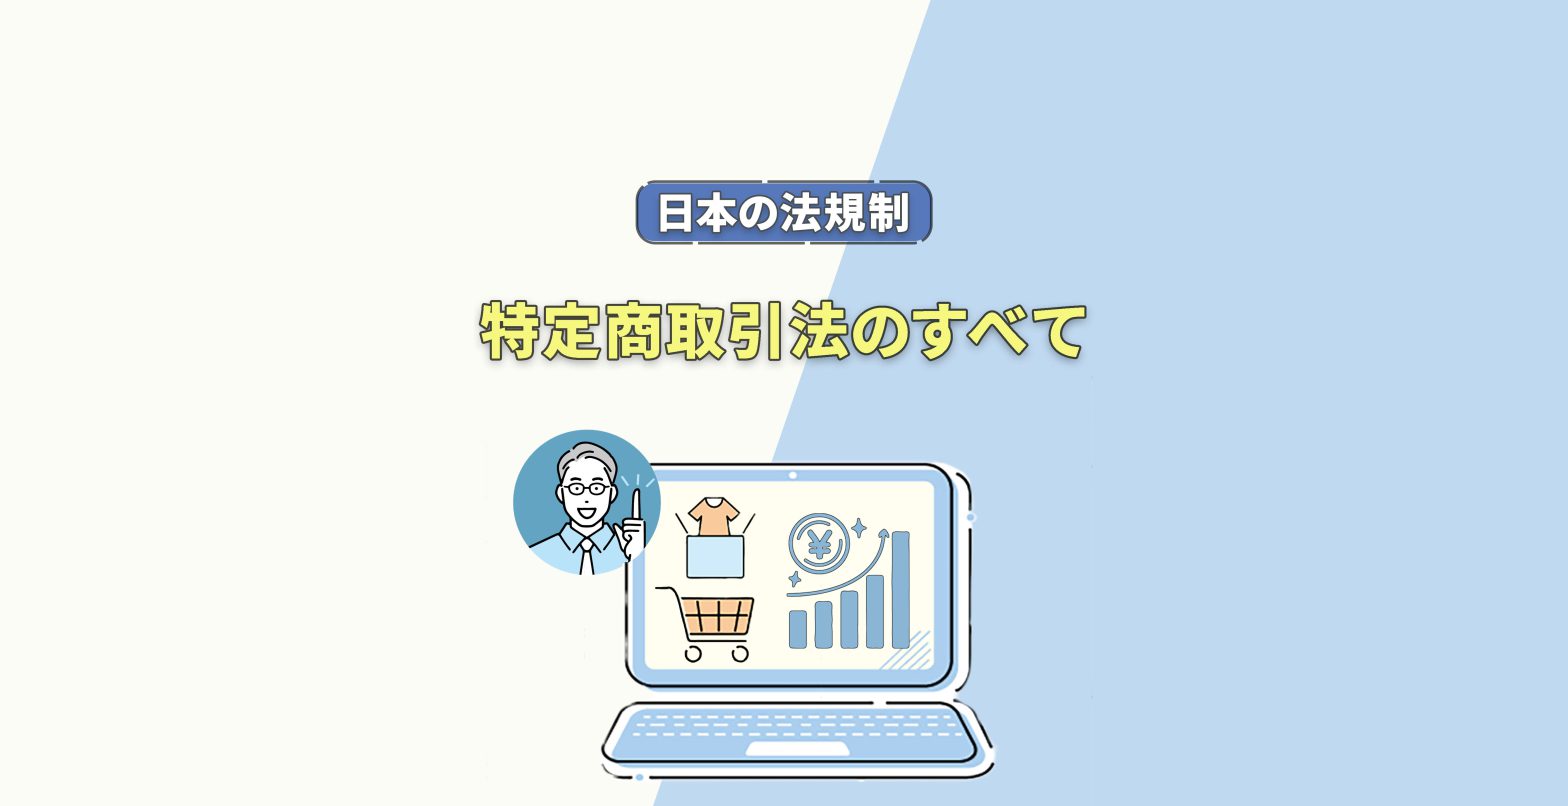 日本のECサイト運営で気を付けるべき法規制ー特定商取引法